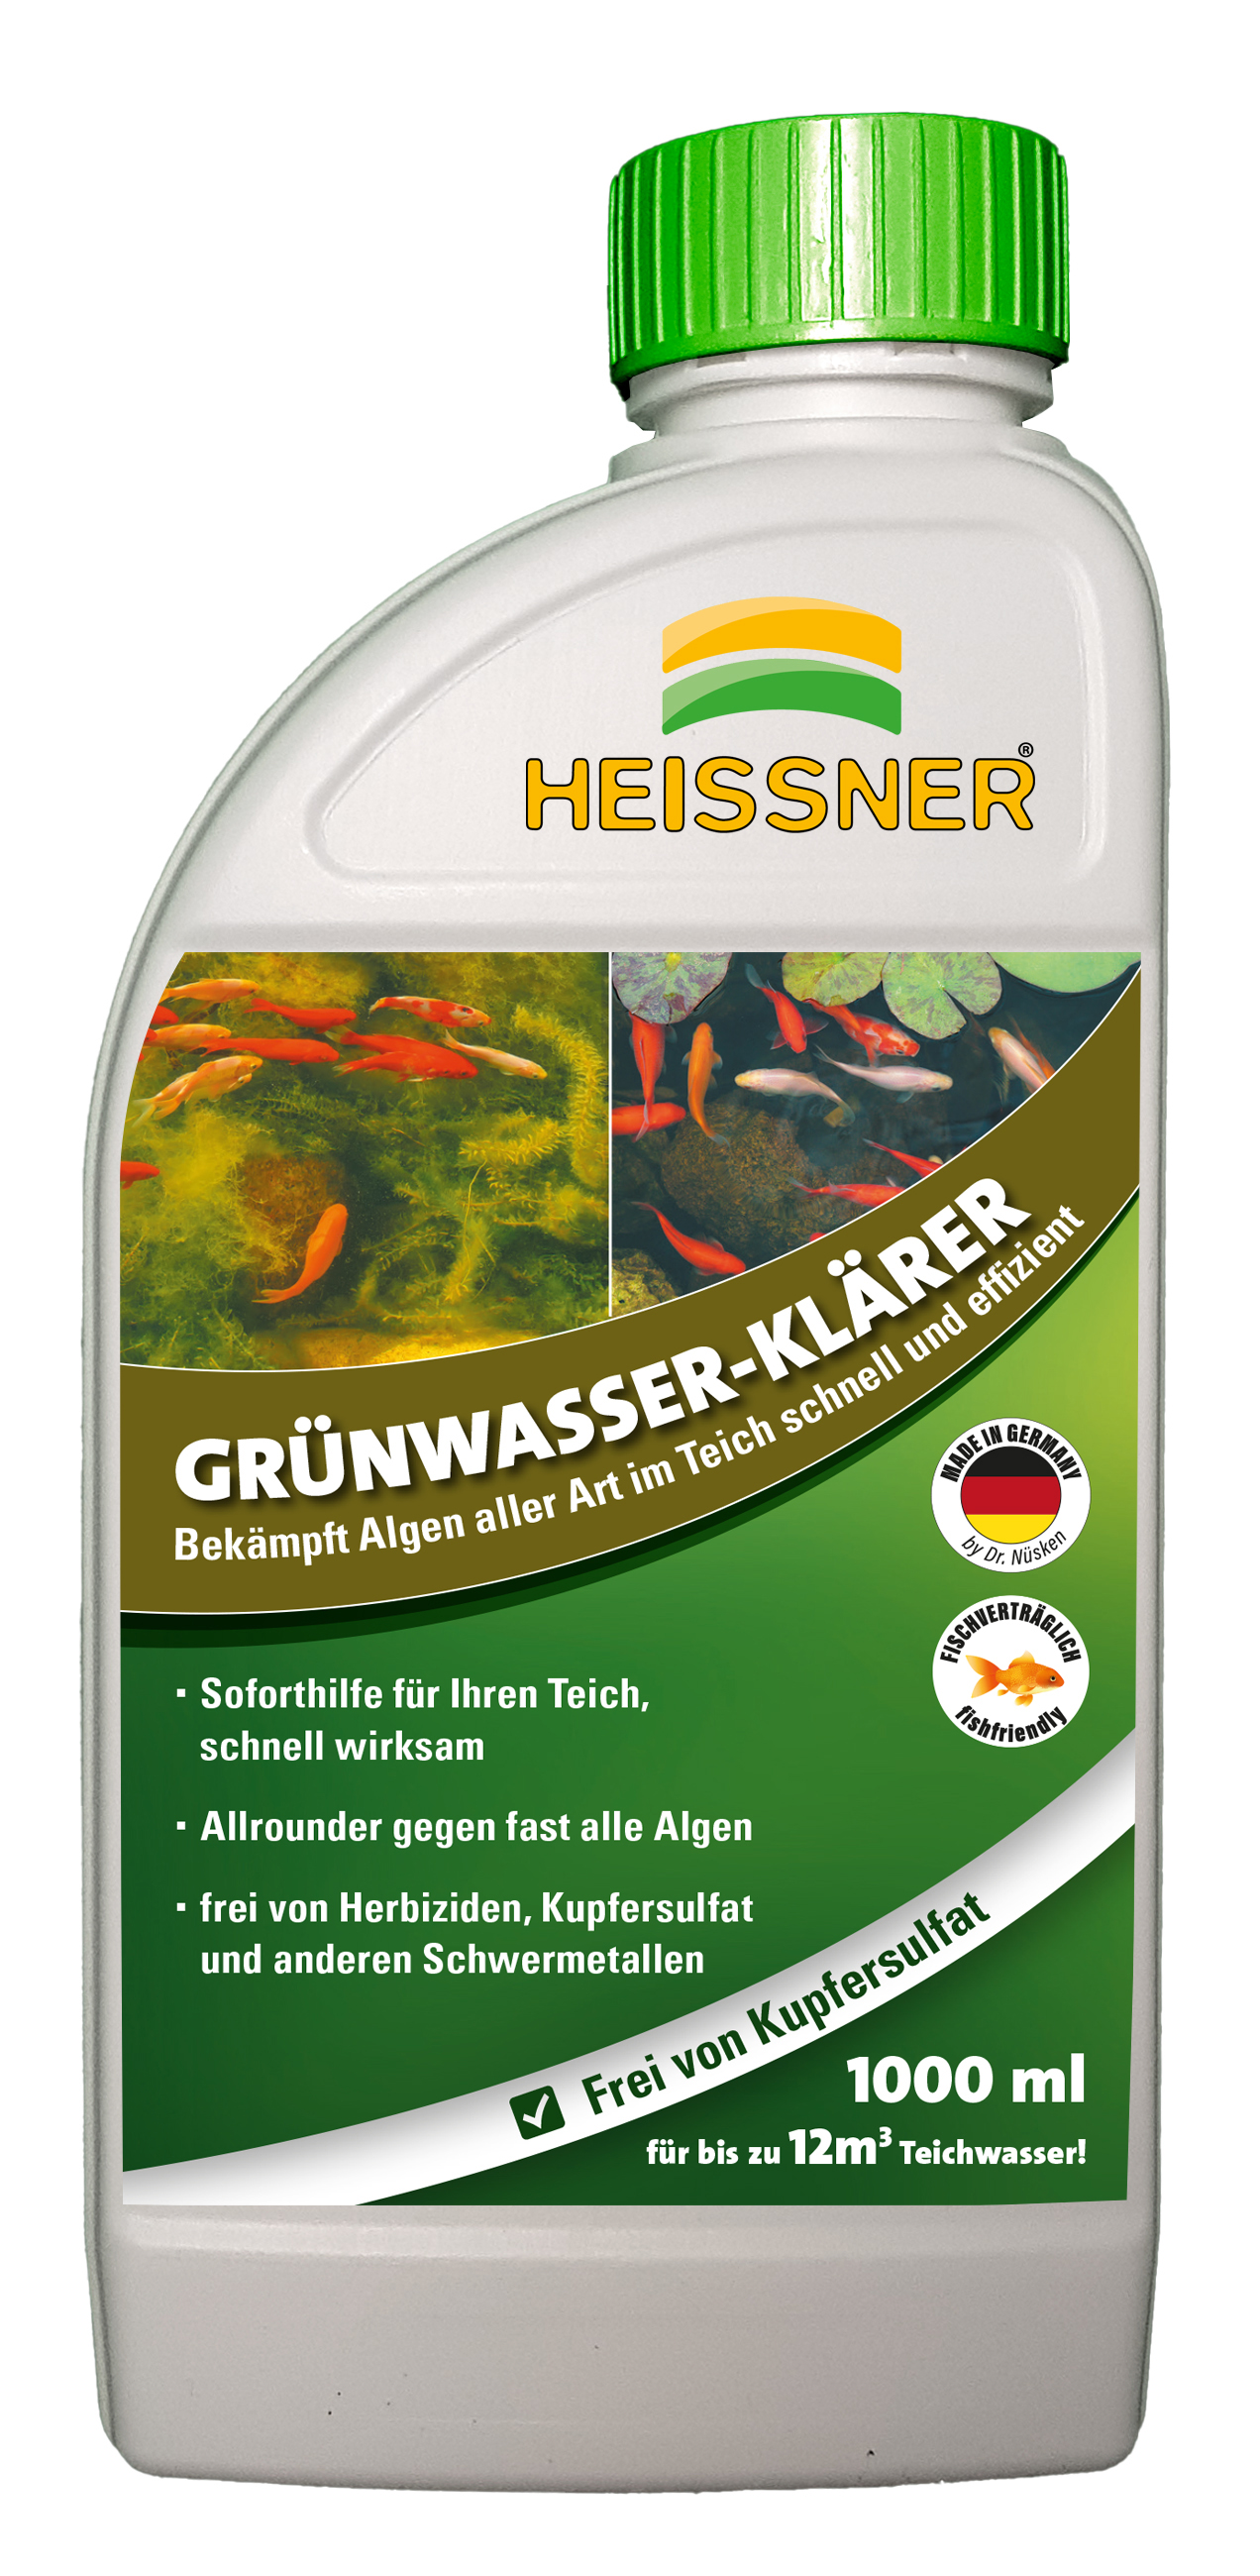 Heissner Teichpflege "GRÜNWASSER-KLÄRER", 1000ml